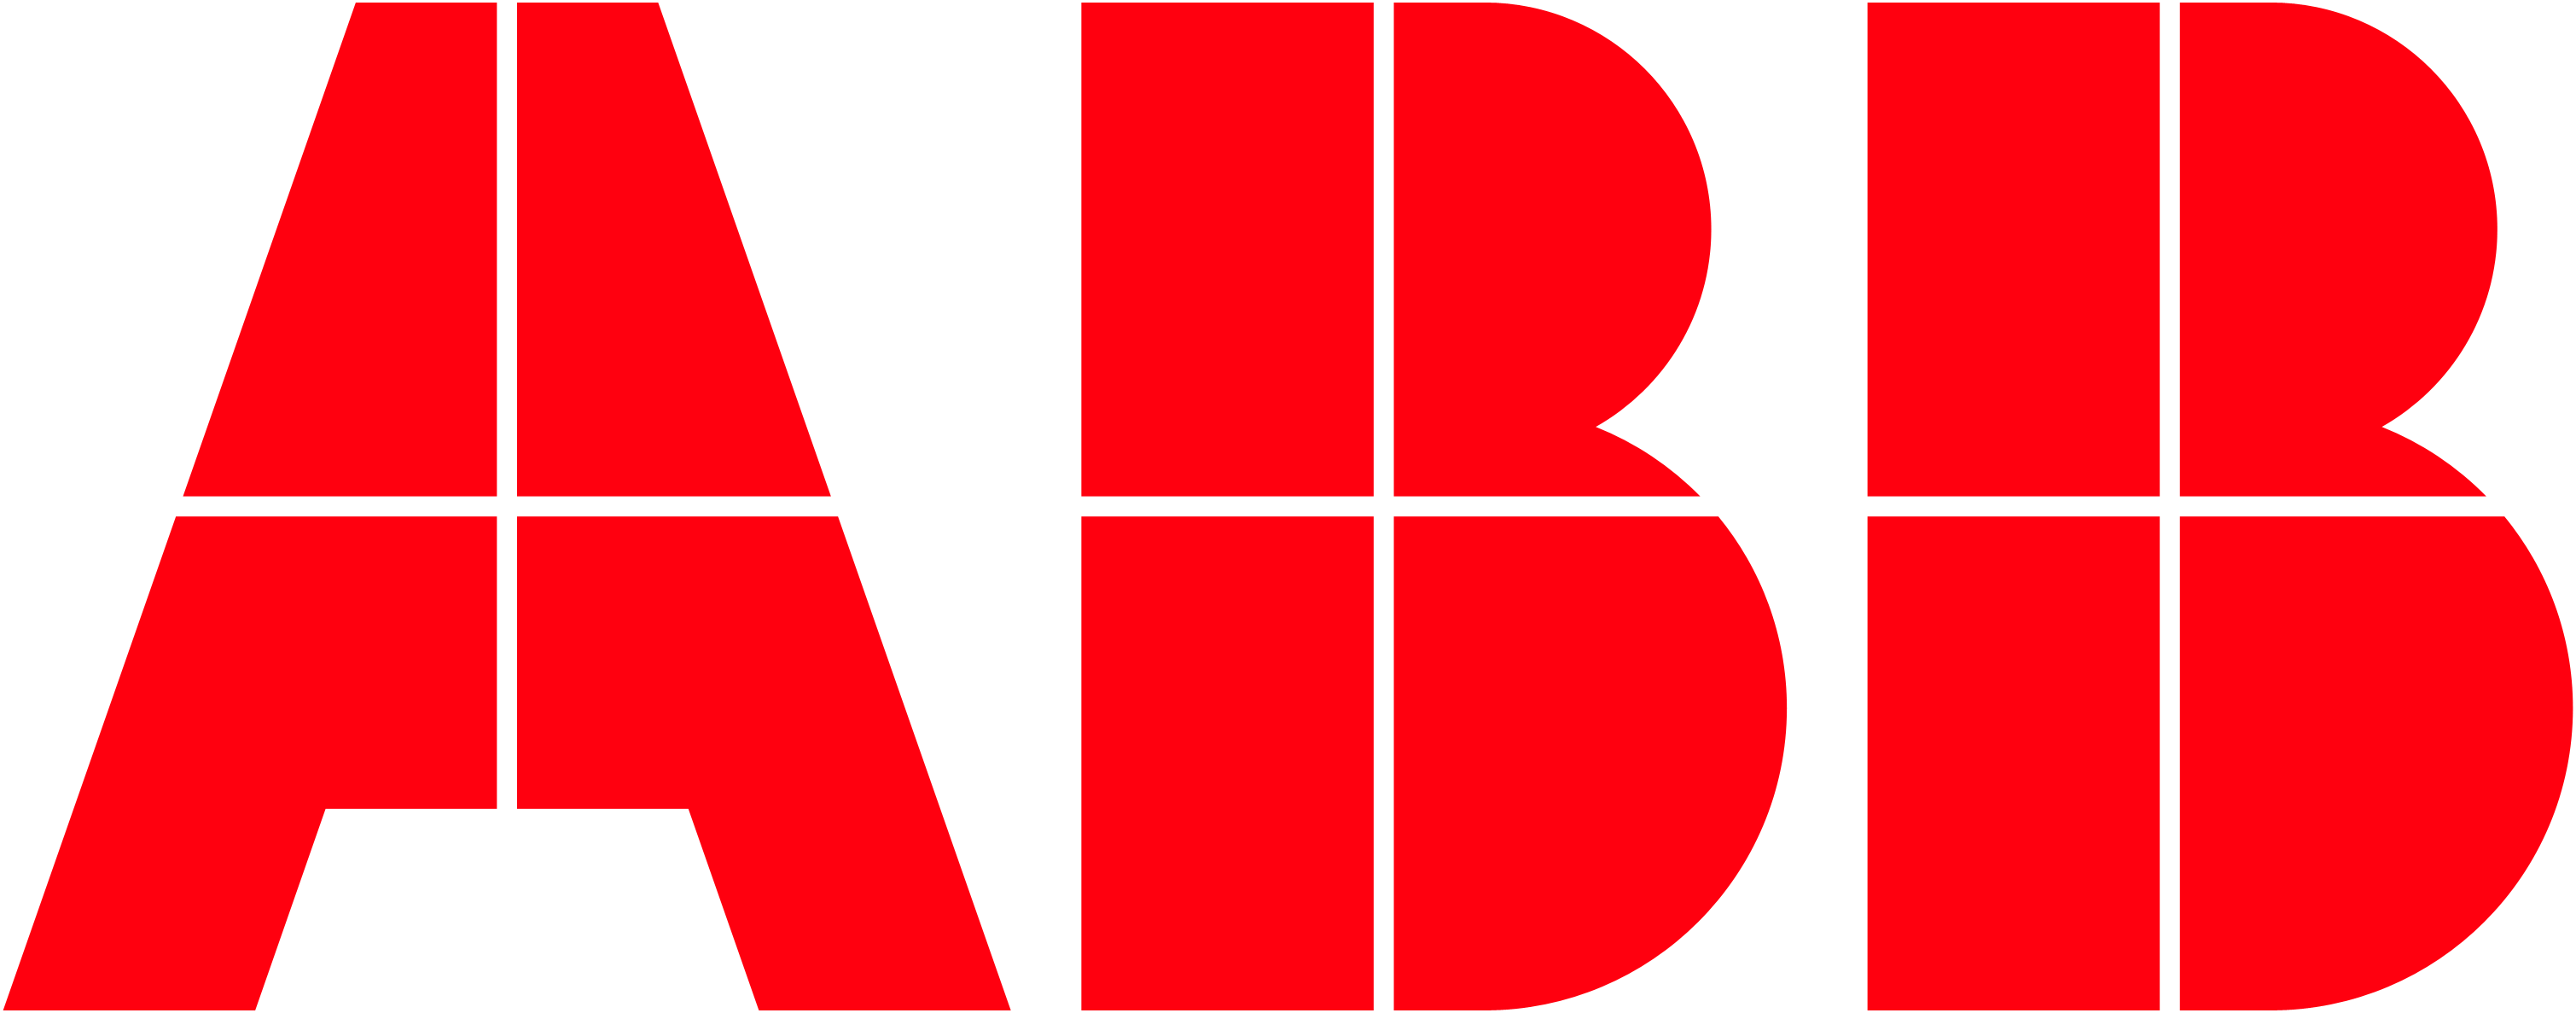 ABB外籍员工京沪航班撒泼被投诉 正式道歉